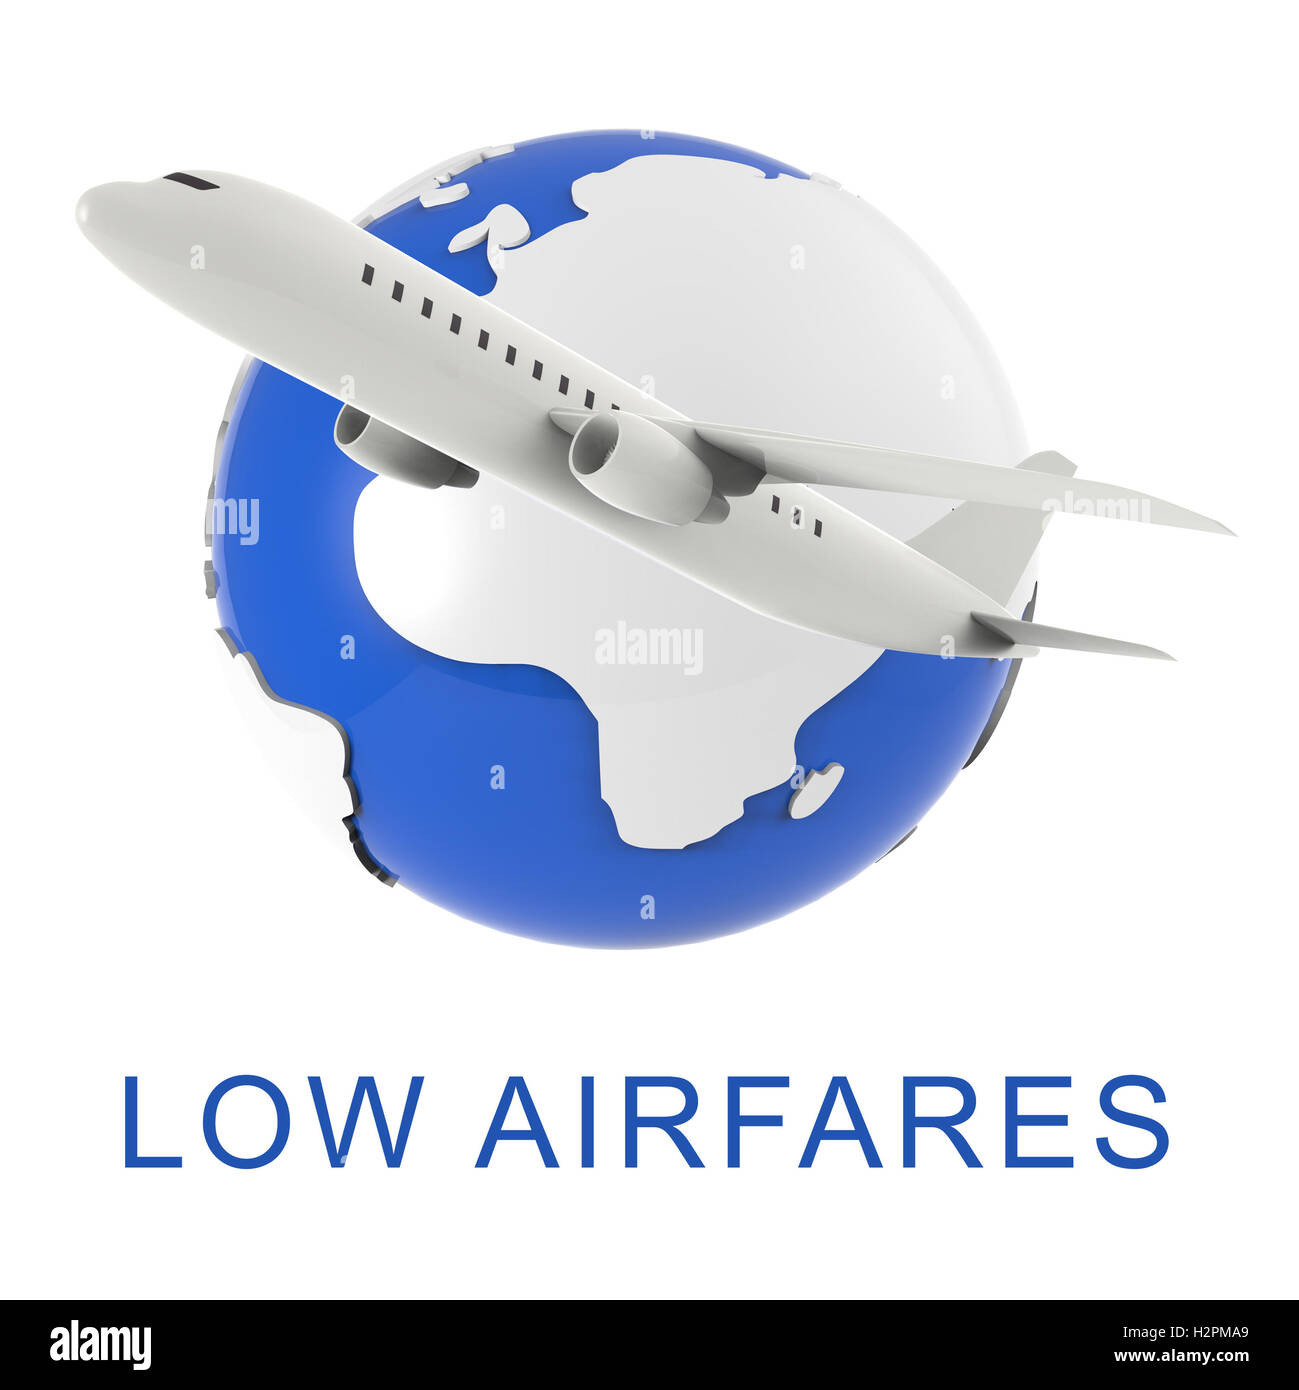 Niedrigste Flugpreise Wort und Flugzeug bedeutet billigsten Flug 3D-Rendering Stockfoto